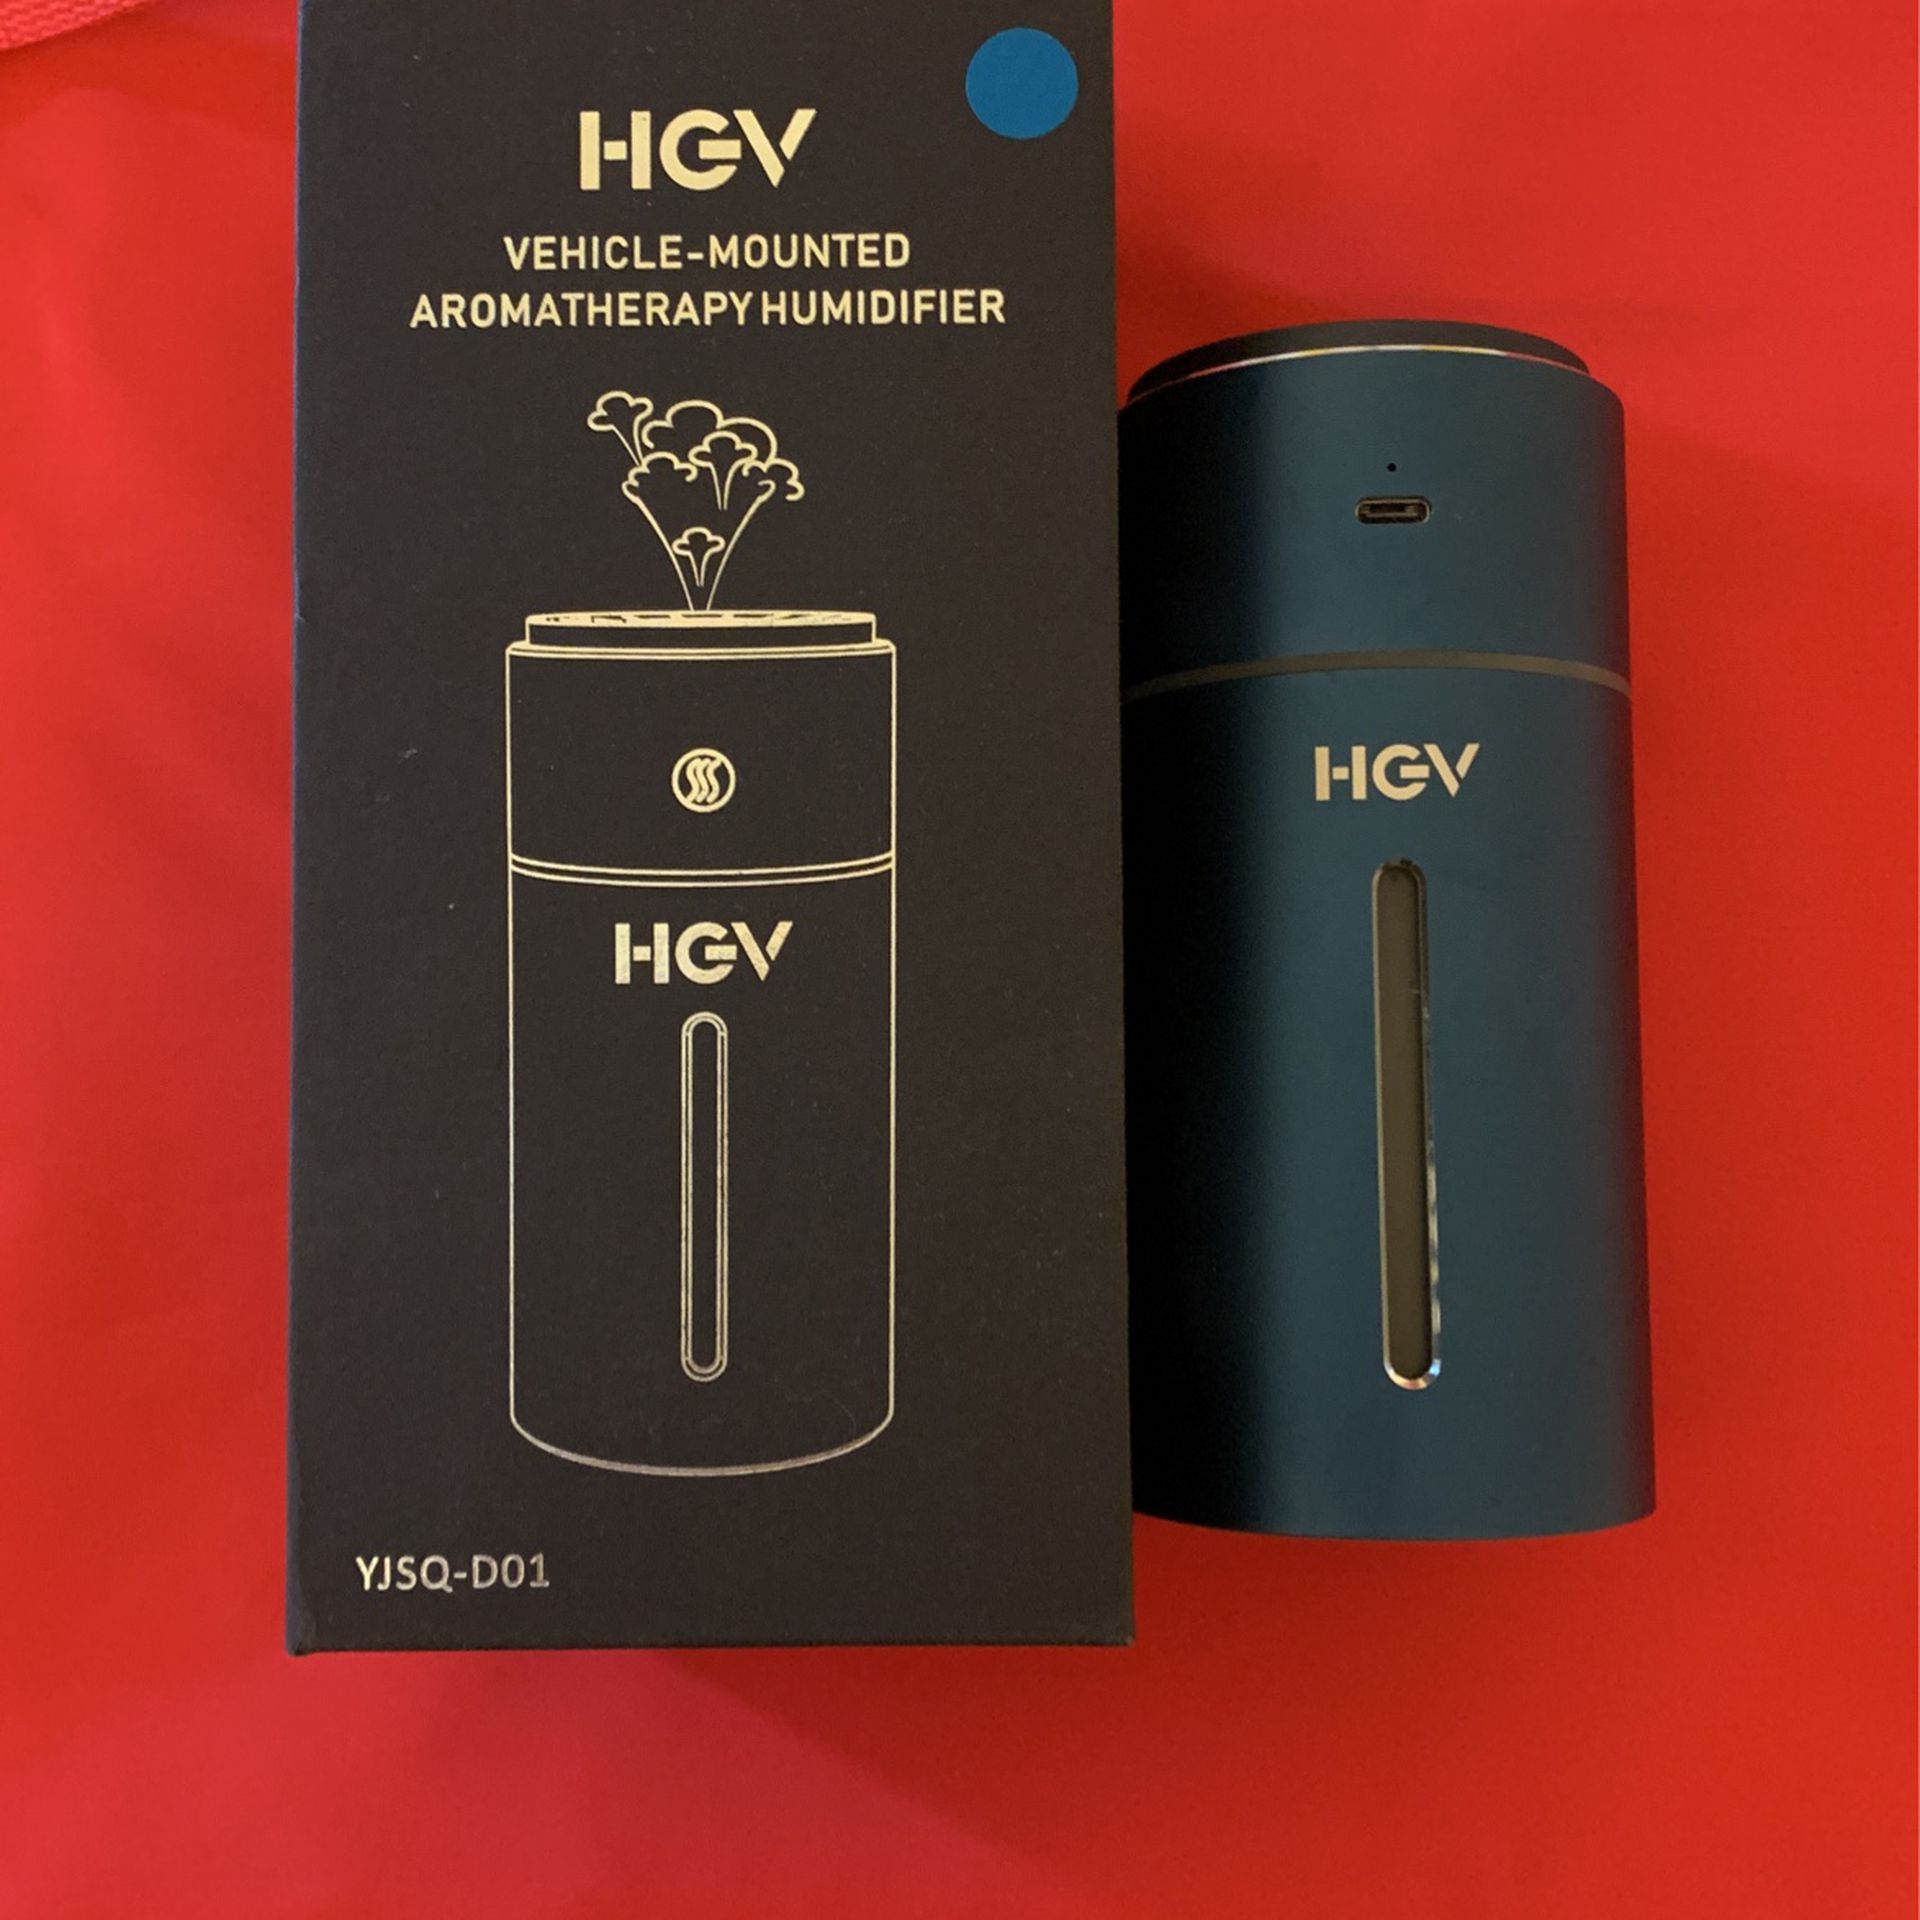 HGV Car Aromatherapy Diffuser, Humidifier, USB Essential Oil Diffuser